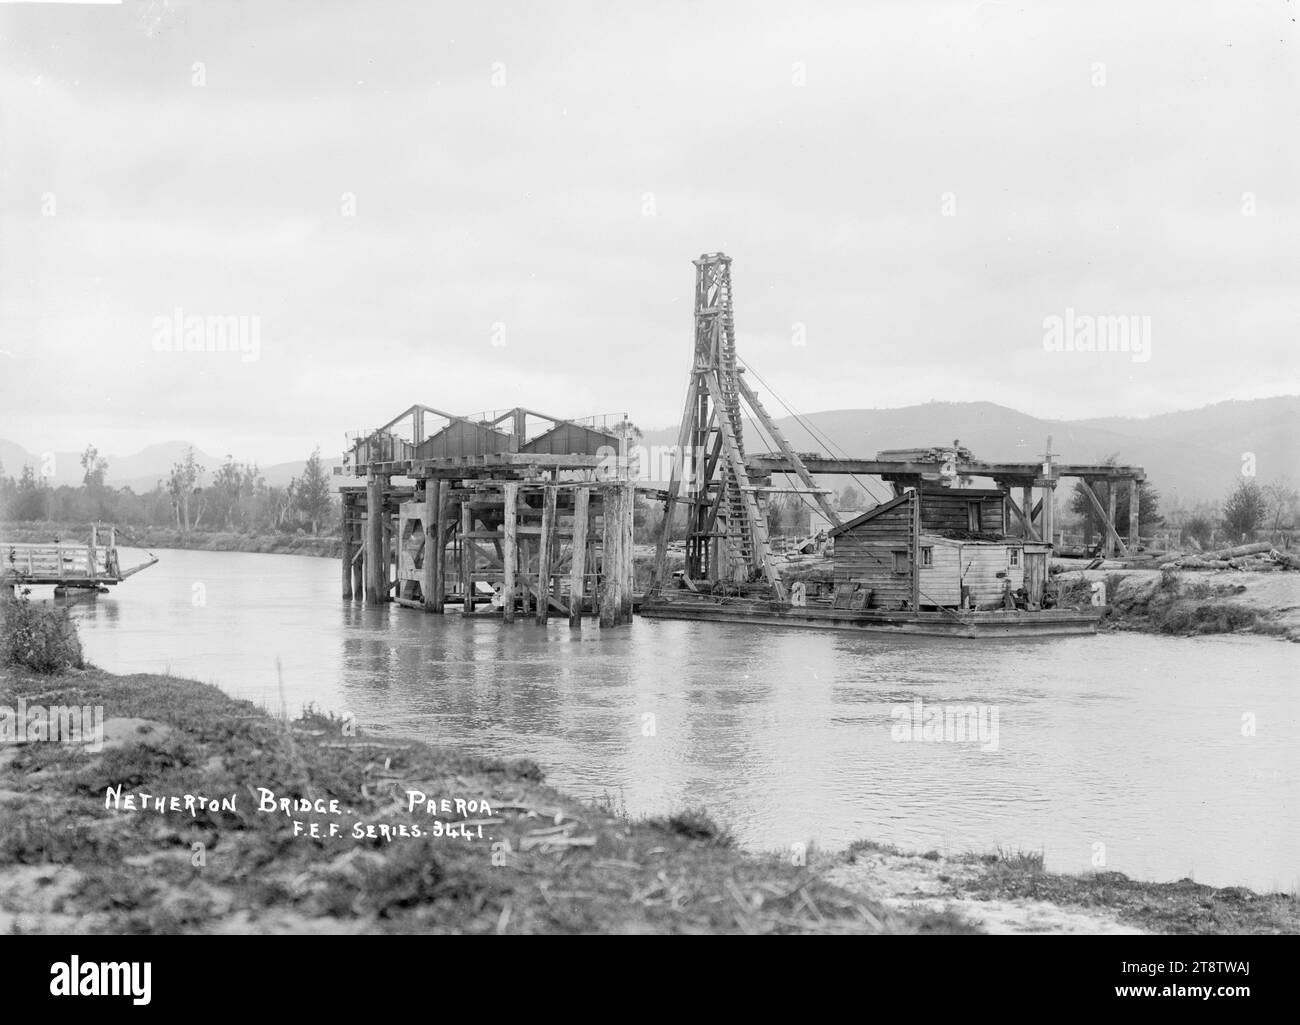 Pont de Netherton en construction, à Paeroa, ca 1918 - Photographie prise par Fred. E Flatt, vue du pont Netherton en construction, à Paeroa. Photographie prise par F.E.F. (probablement Fred E Flatt, papeteur, à Paeroa en 1918 Banque D'Images